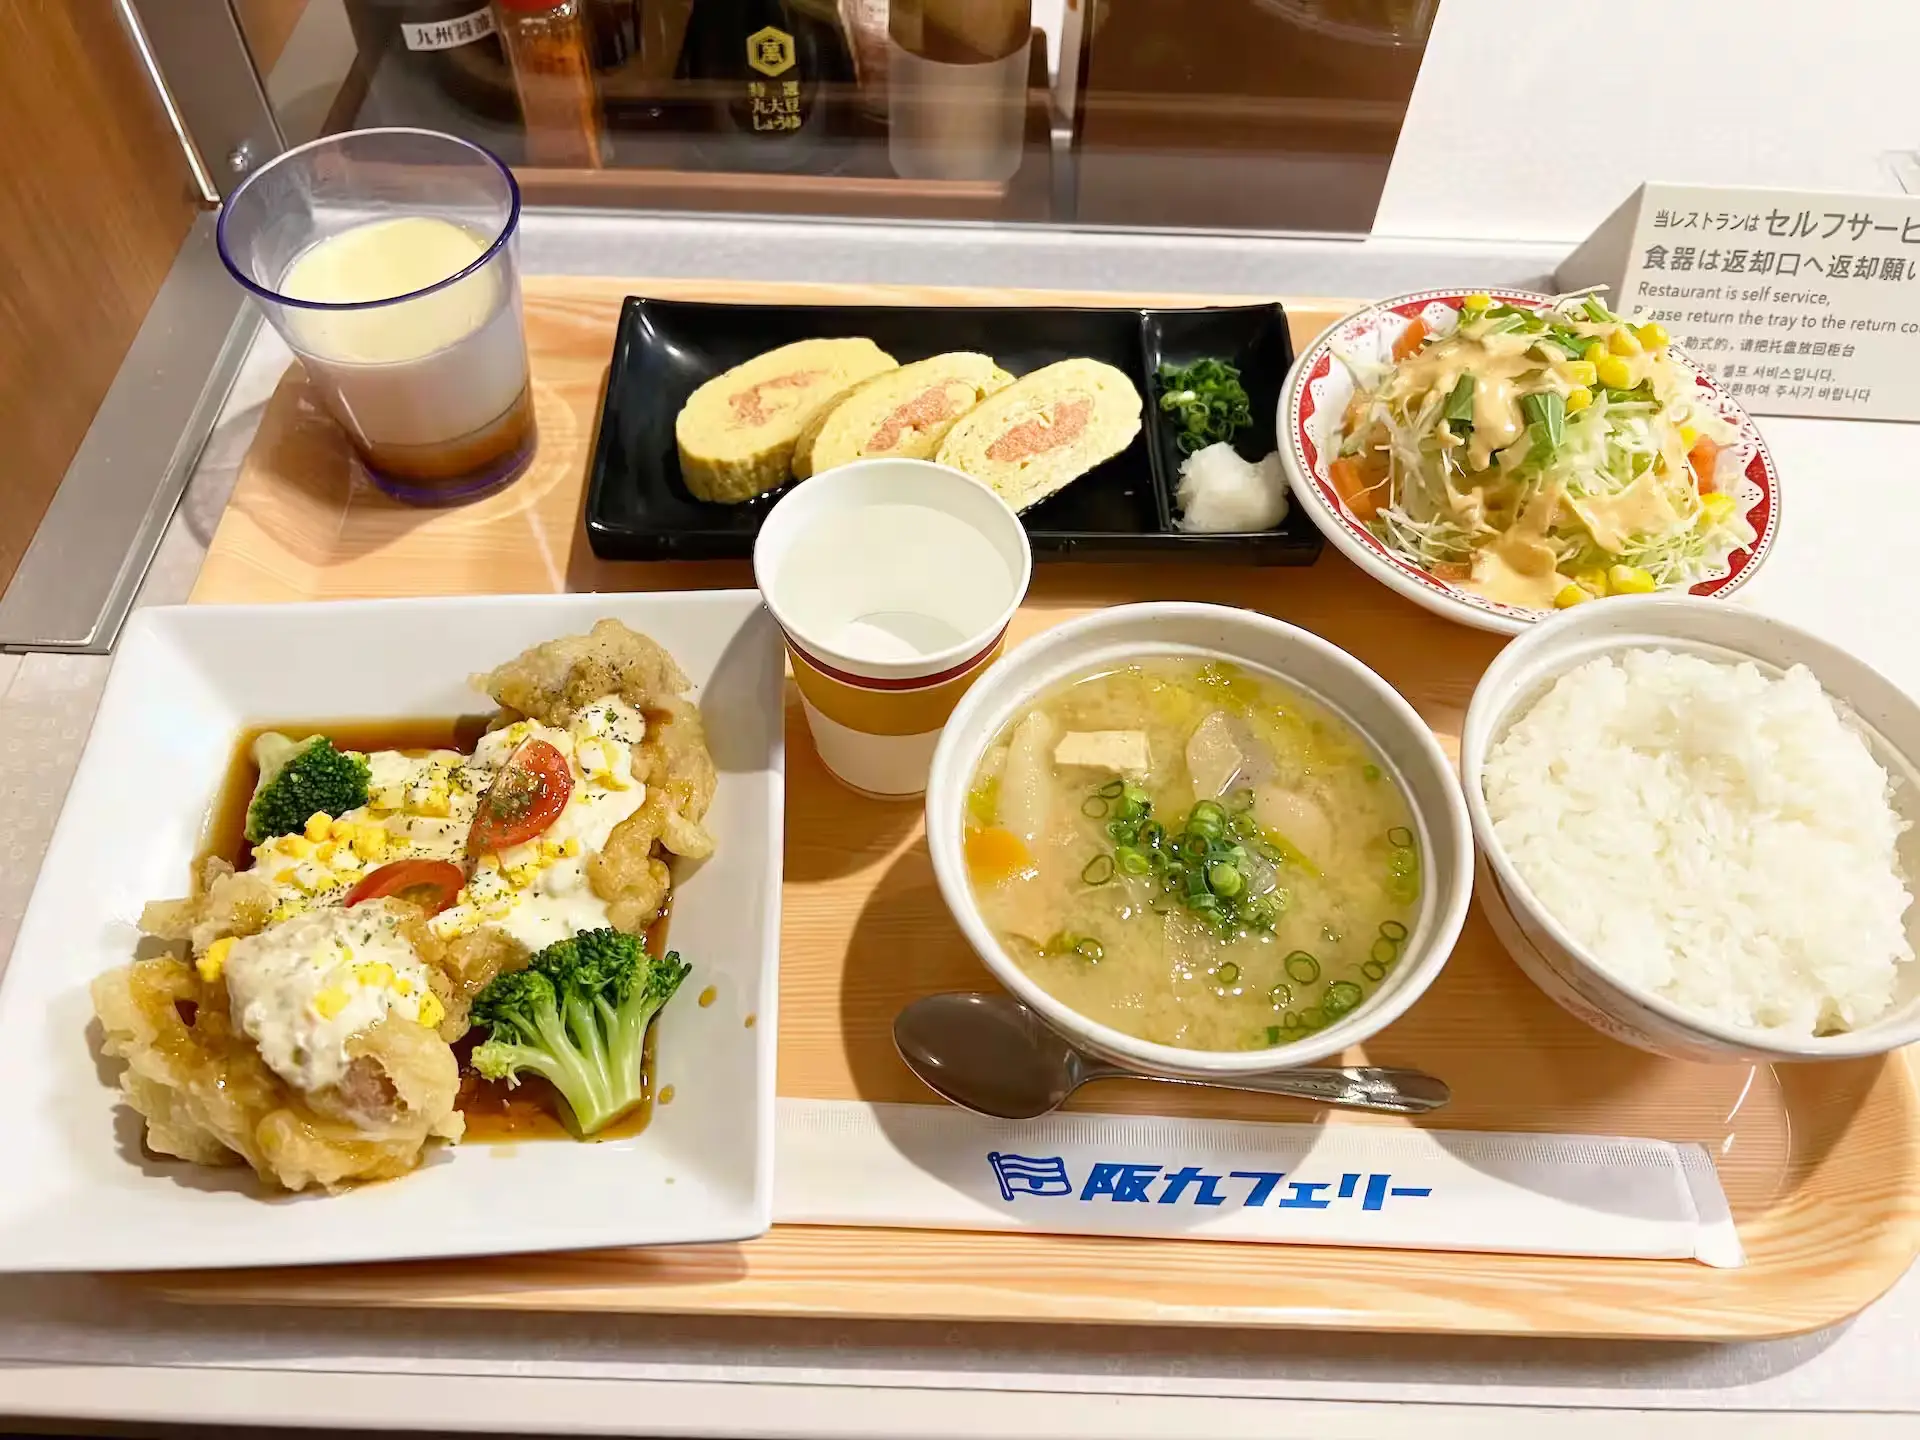 阪九轮渡大和号船内餐厅晚餐菜单